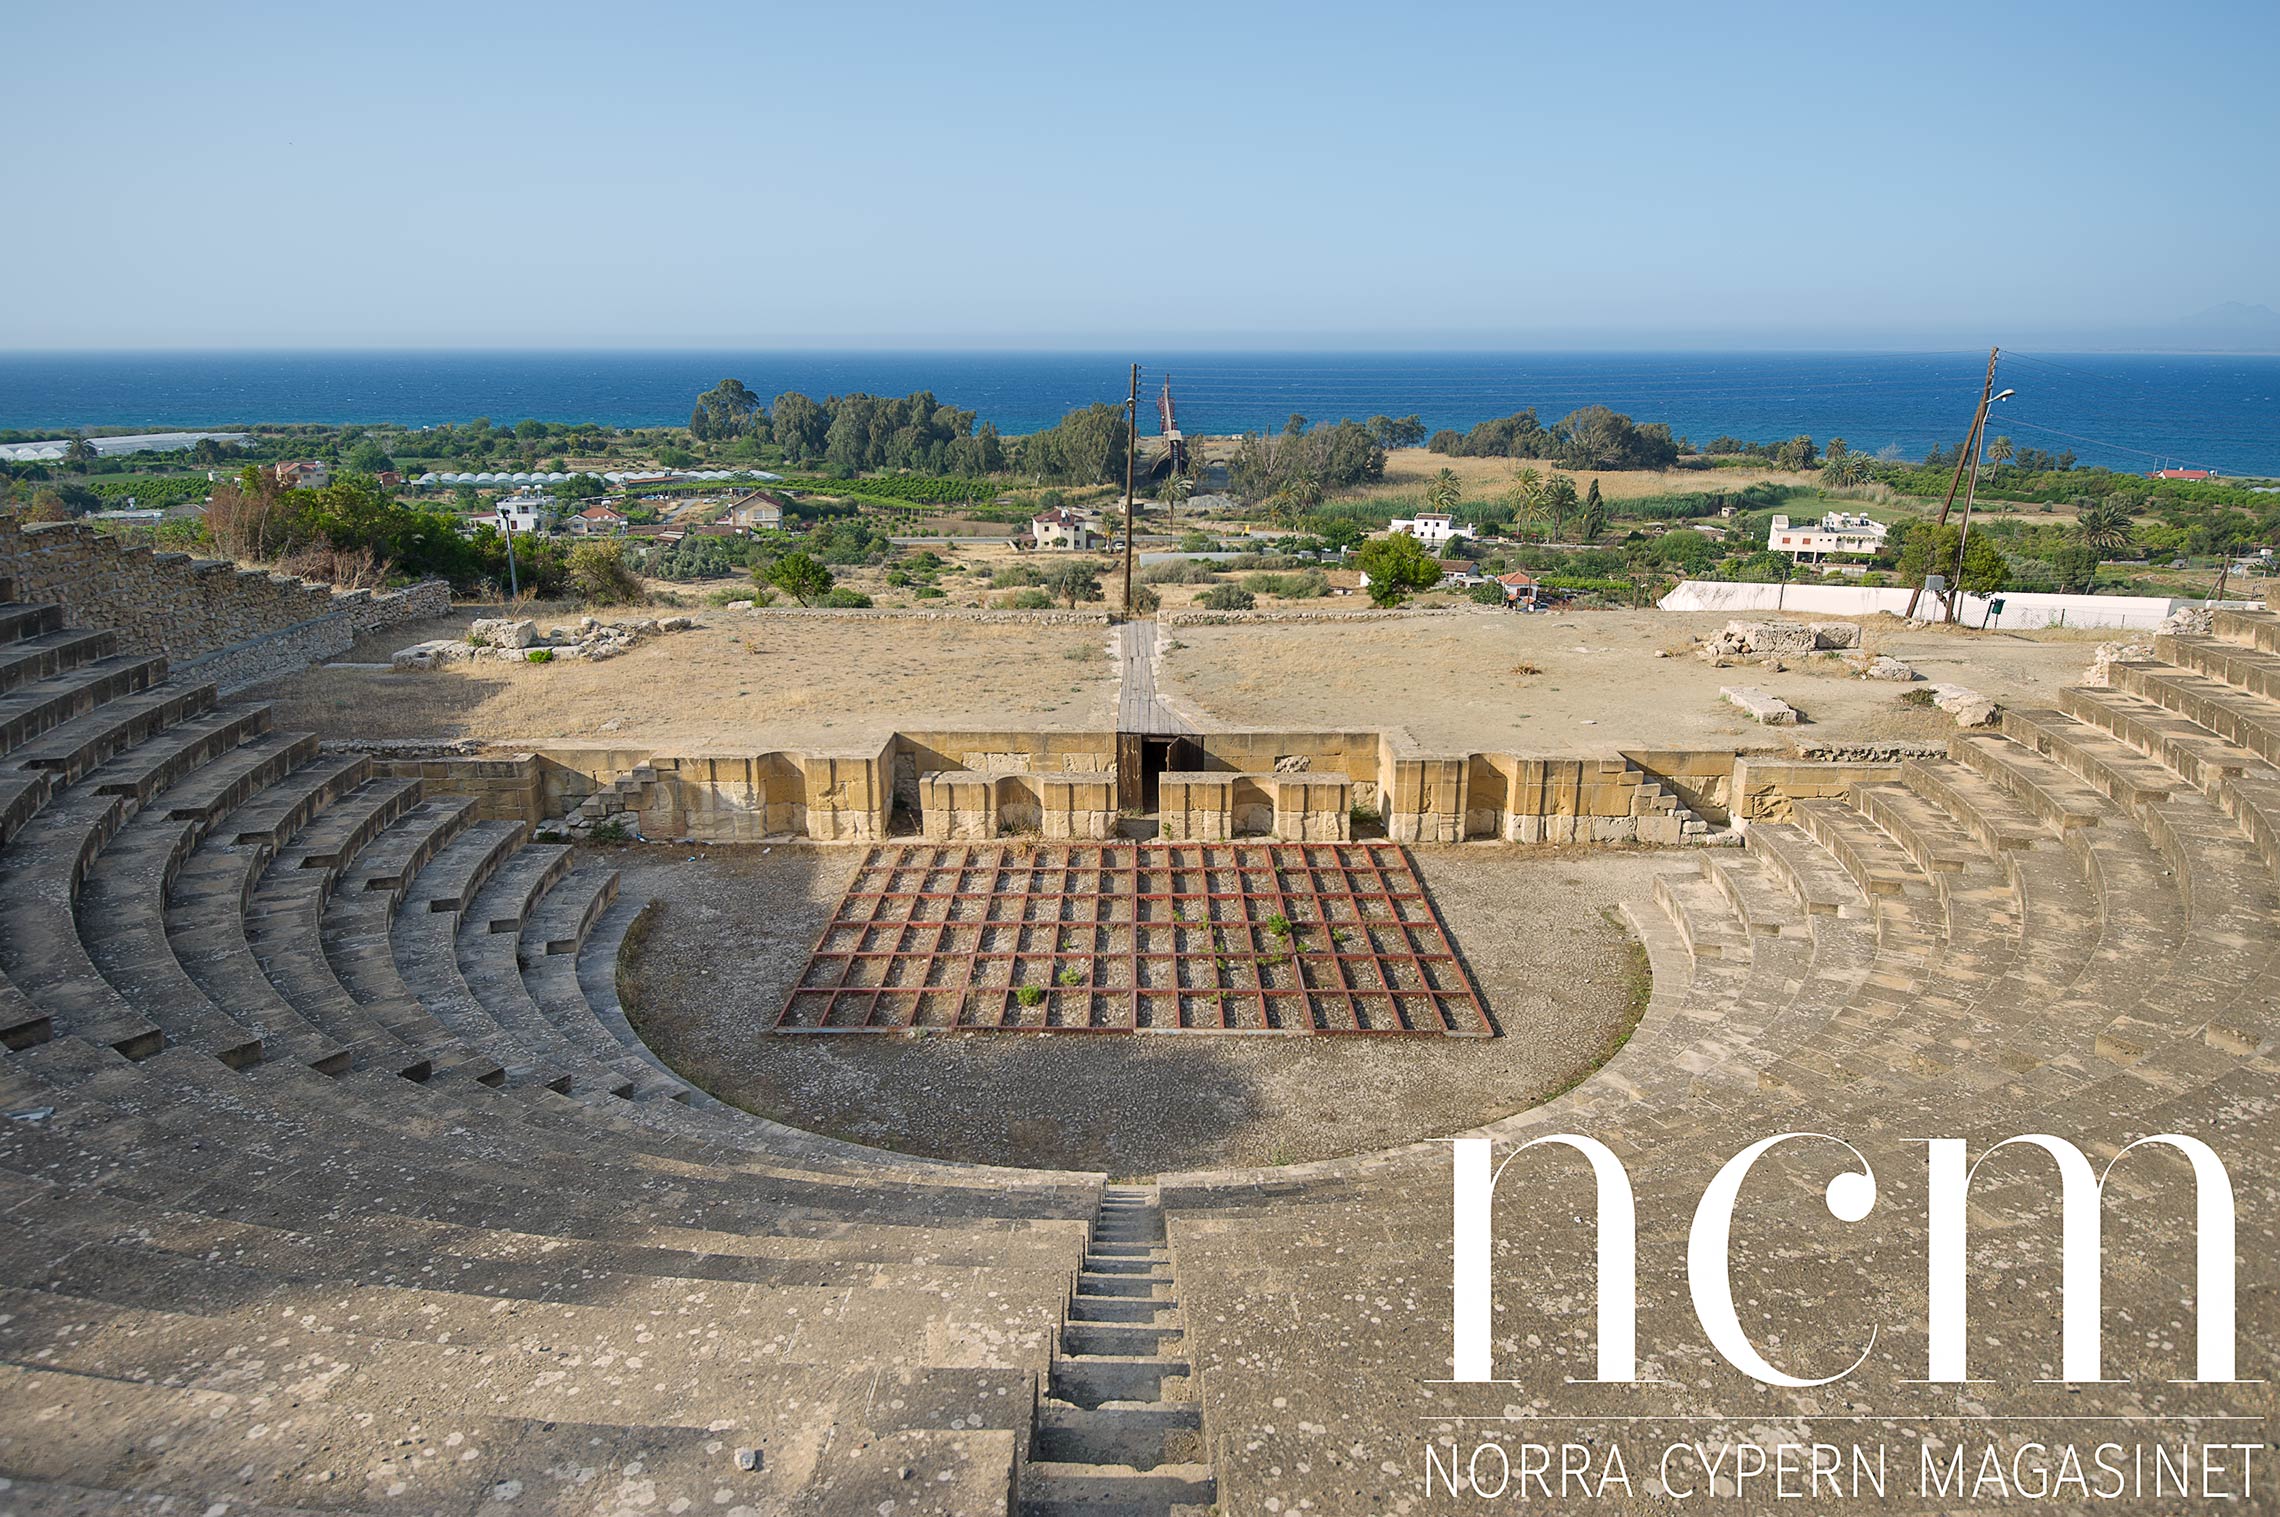 soli ligger på cyperns västra kust och har en amfiteater